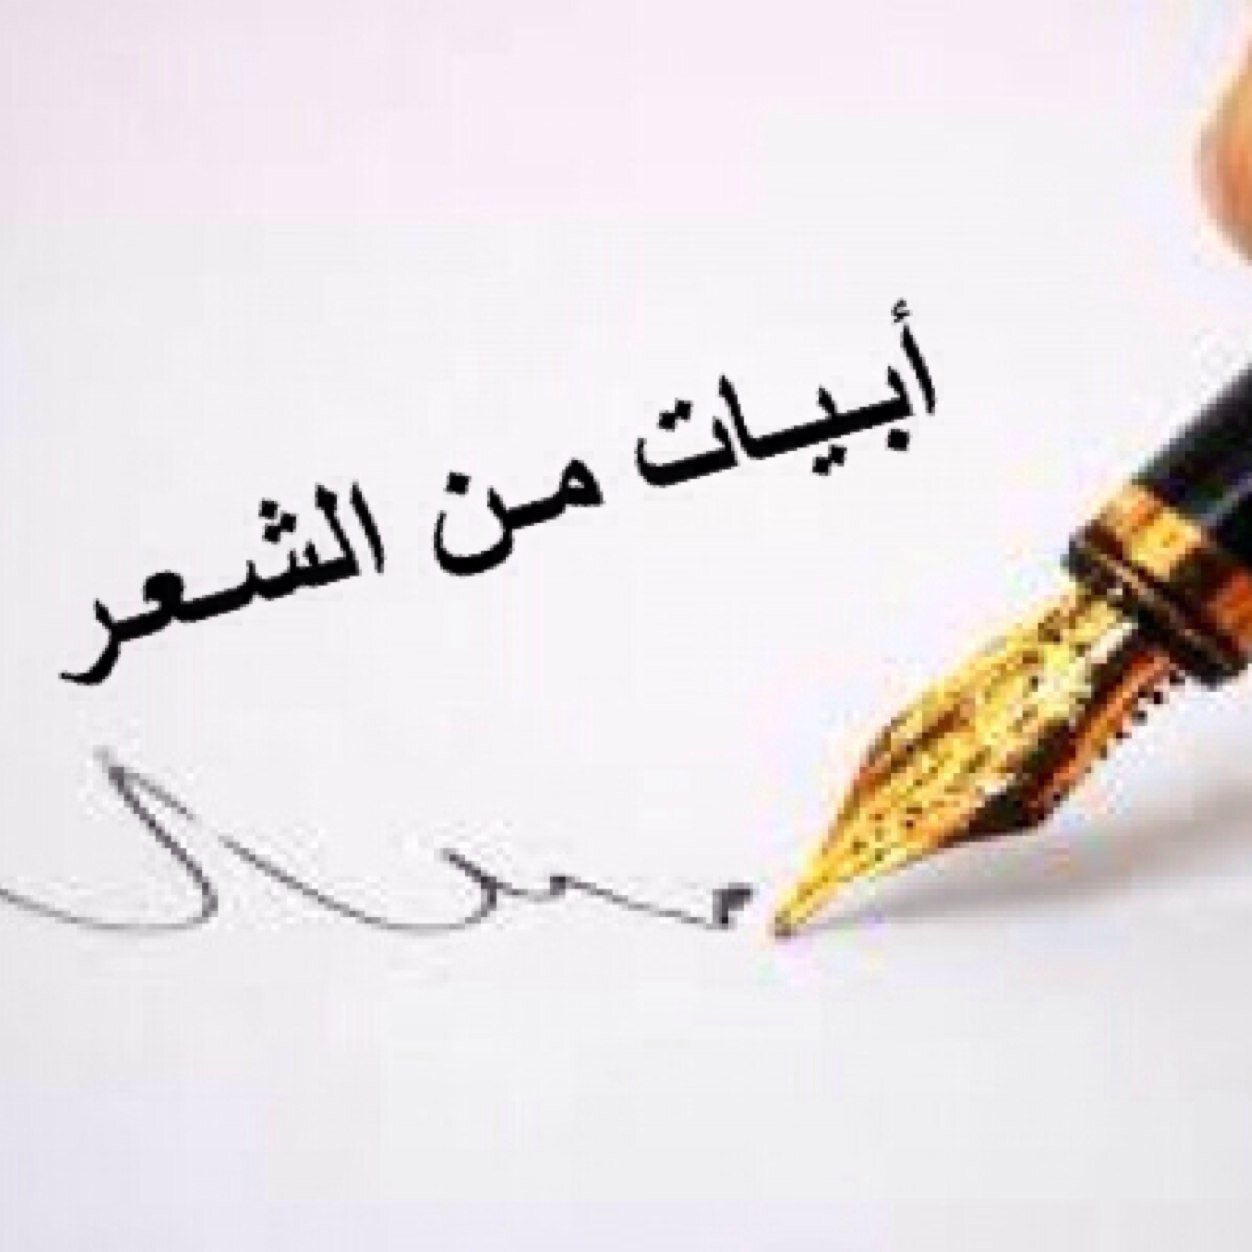 ابيات شعر مدح من اروع القصائد في المدح والفخر عند العرب